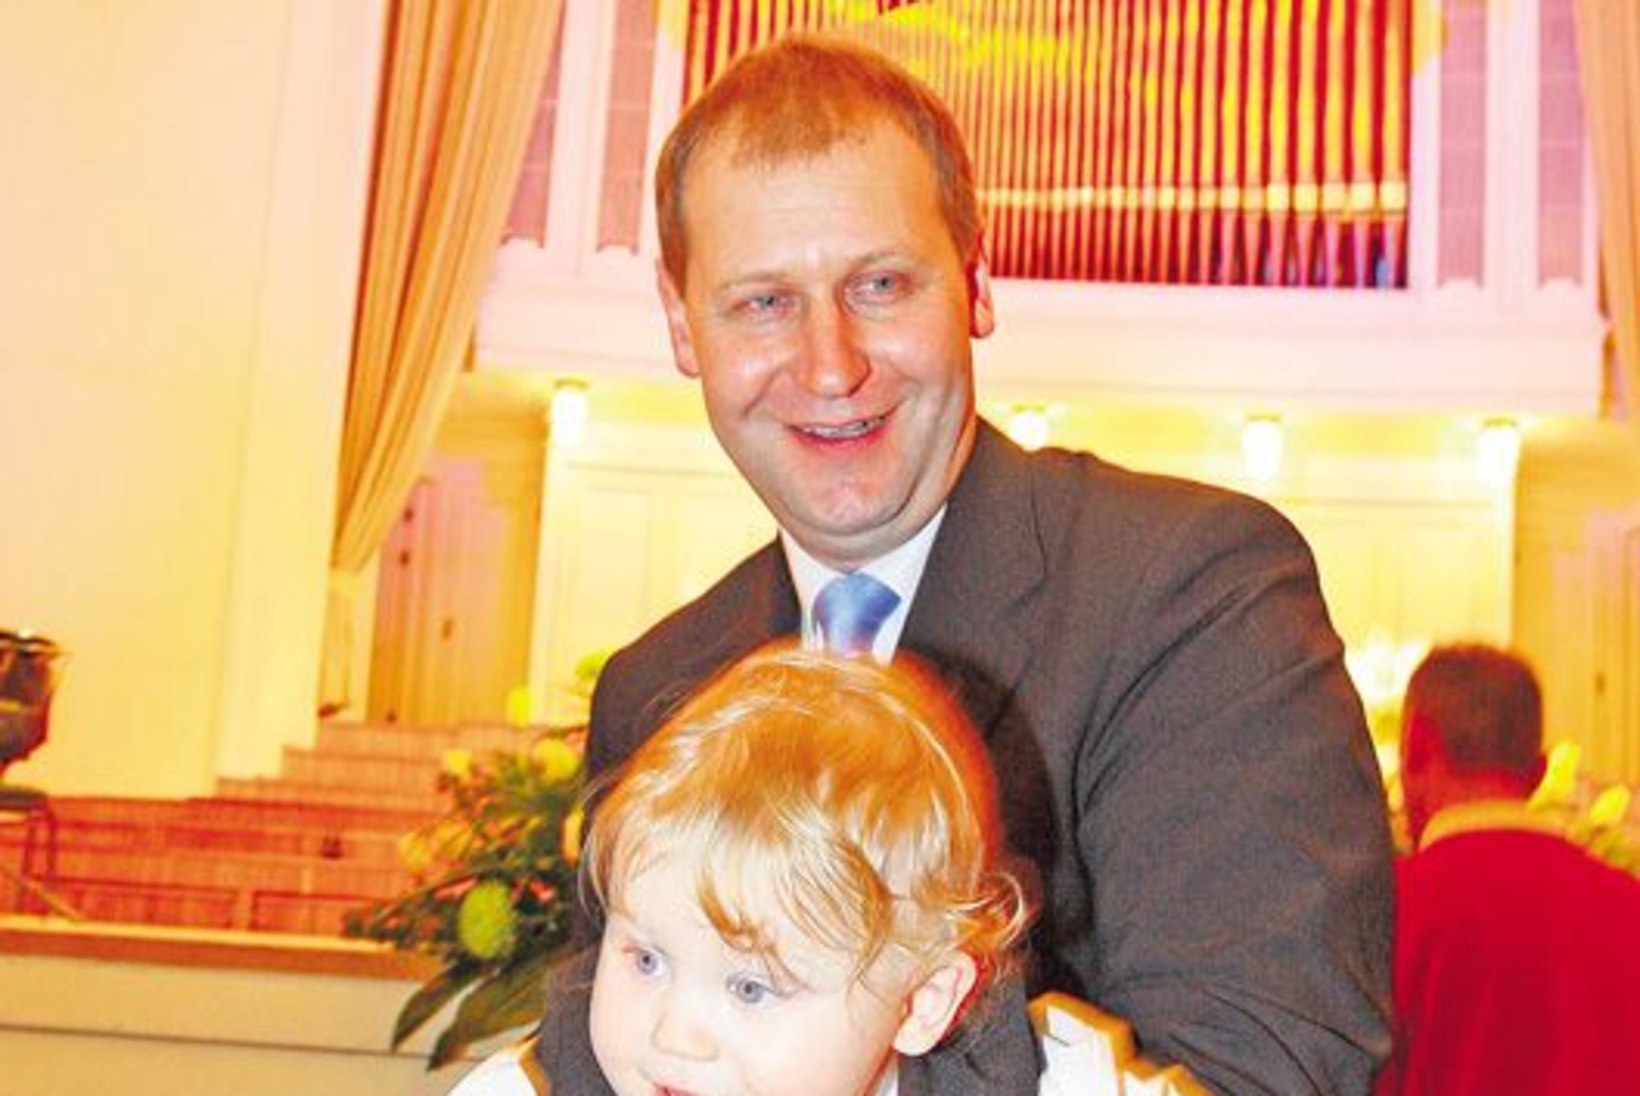 Aasta isa Urmas Kruuse: "Igaühega peret luua ei saa, ainult selle üheainsaga."